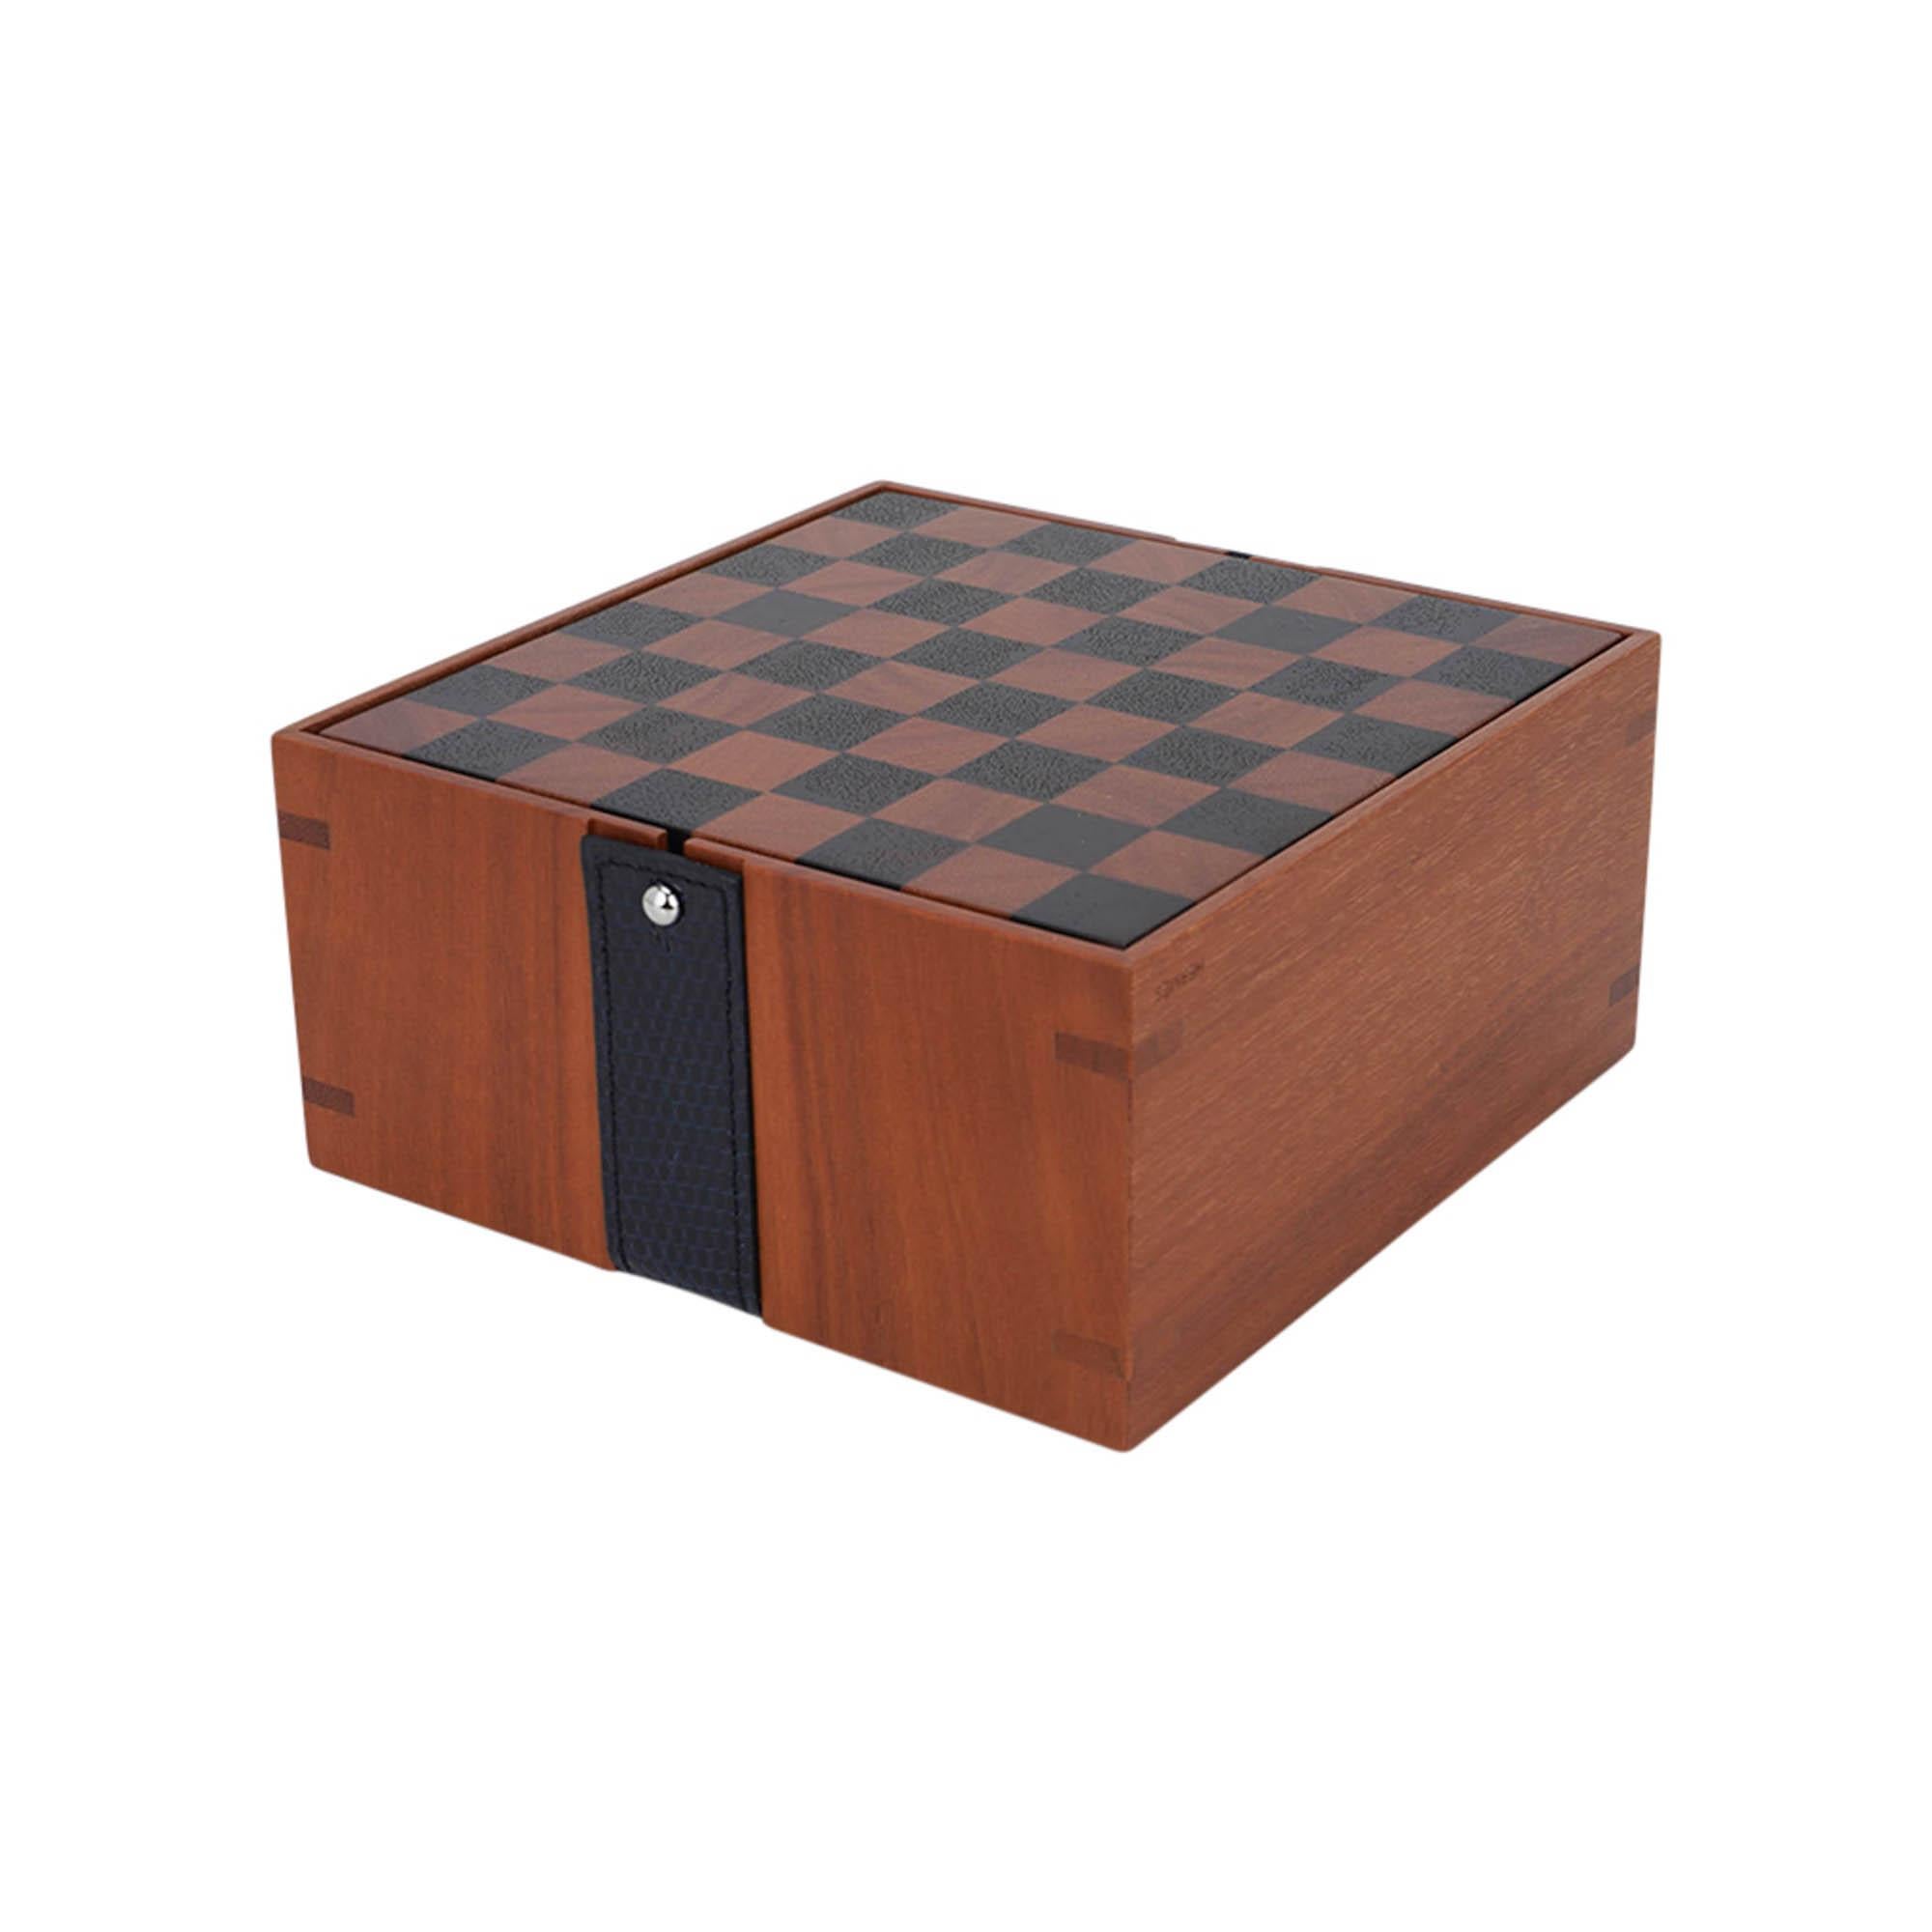 Mightychic bietet ein Hermes Mini-Samarcande-Schach-Set an  mit einem Hauch von Luxus!
Gefertigt aus Sapodillaholz und massivem Cassiaholz.
Ein Mini-Schachspiel mit magnetischen Figuren.
In Anlehnung an das Reitermotiv wird die Box mit einem 